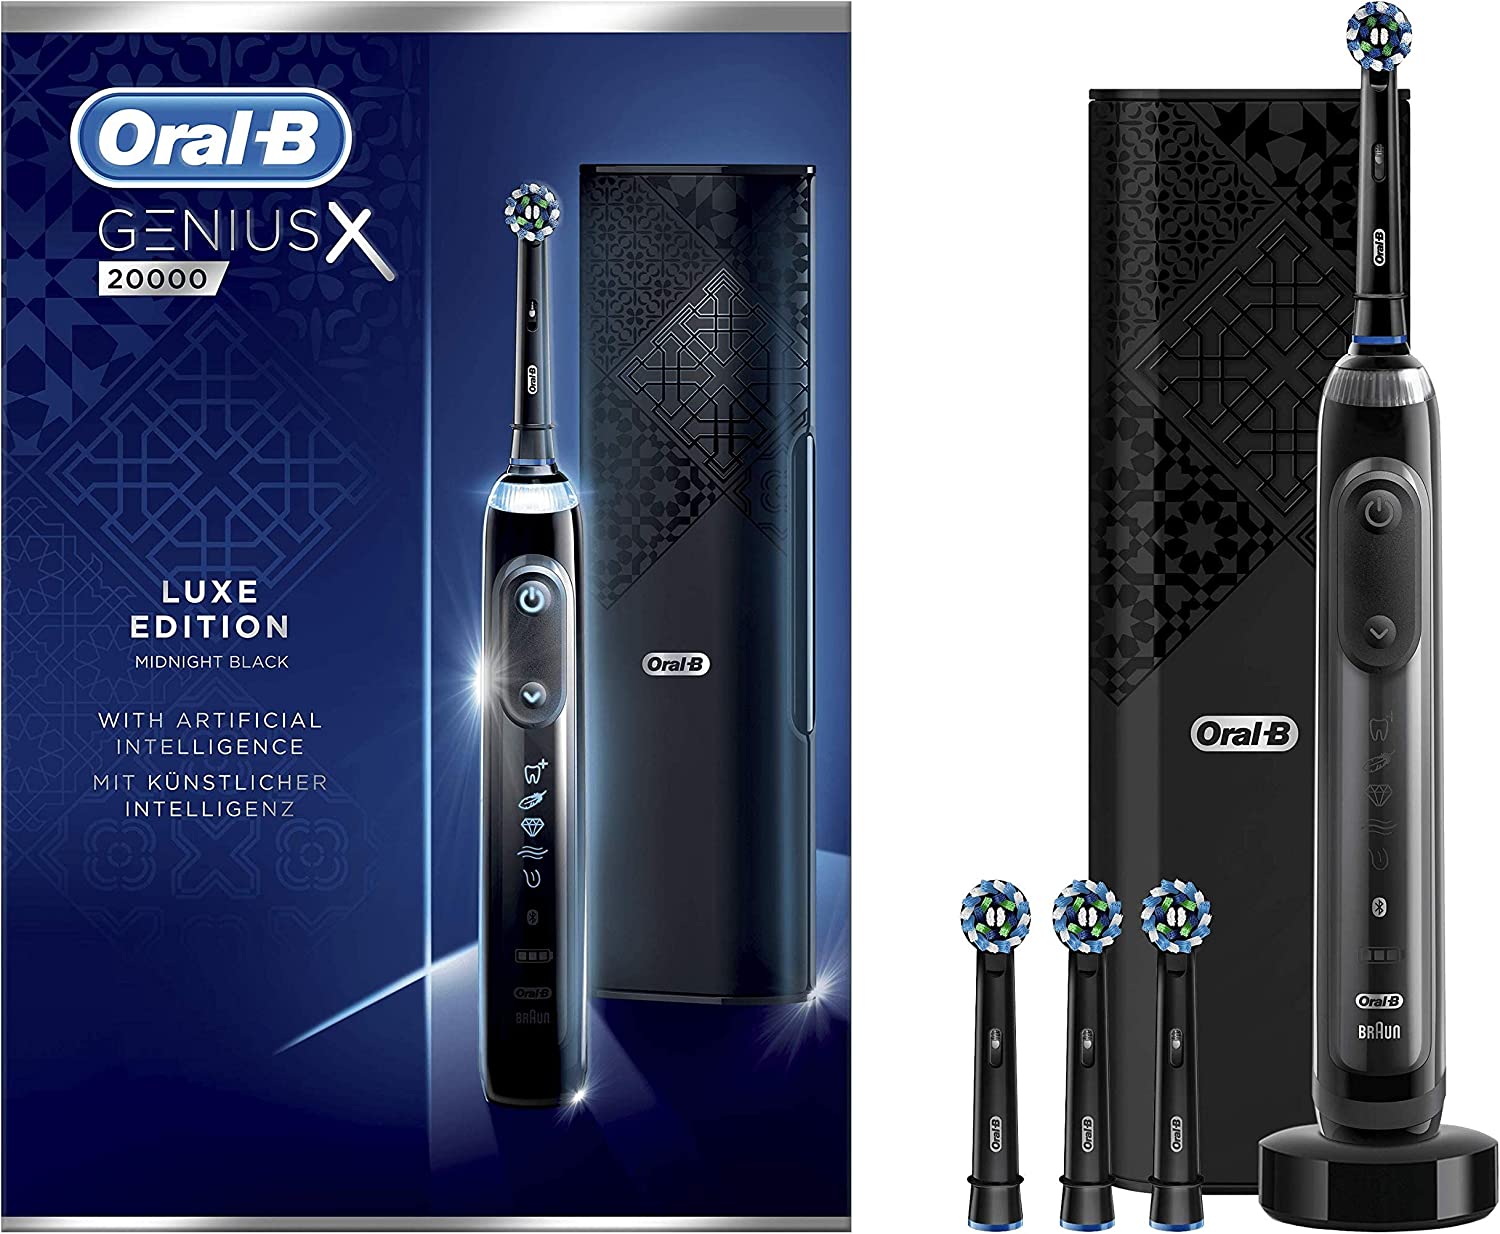 Oral-B Genius X Luxe Edition 20000 vs Oral-B IO 10